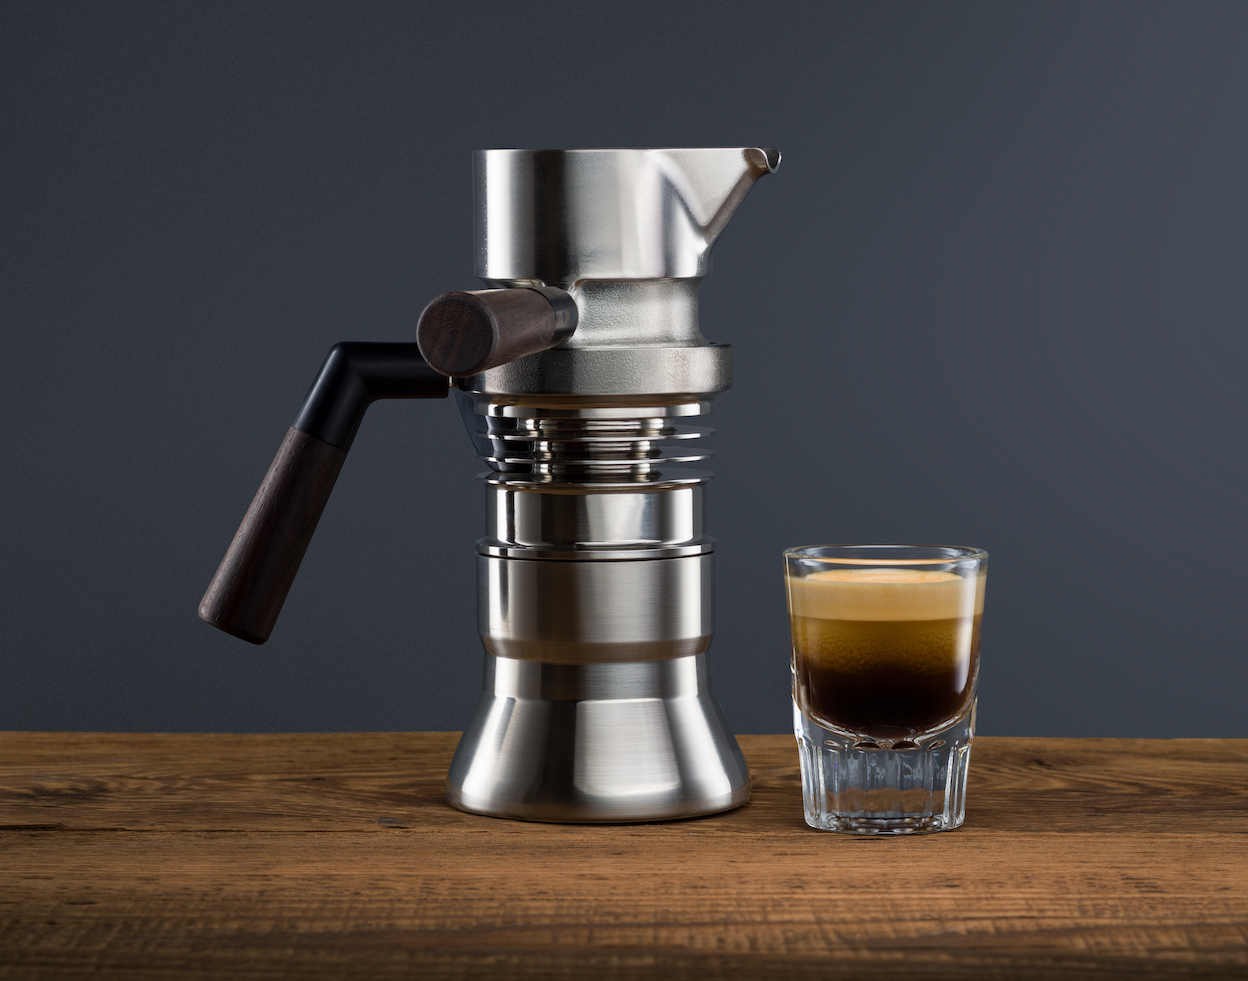 https://www.gessato.com/wp-content/uploads/2022/03/best-stovetop-espresso-makers-featured.jpg